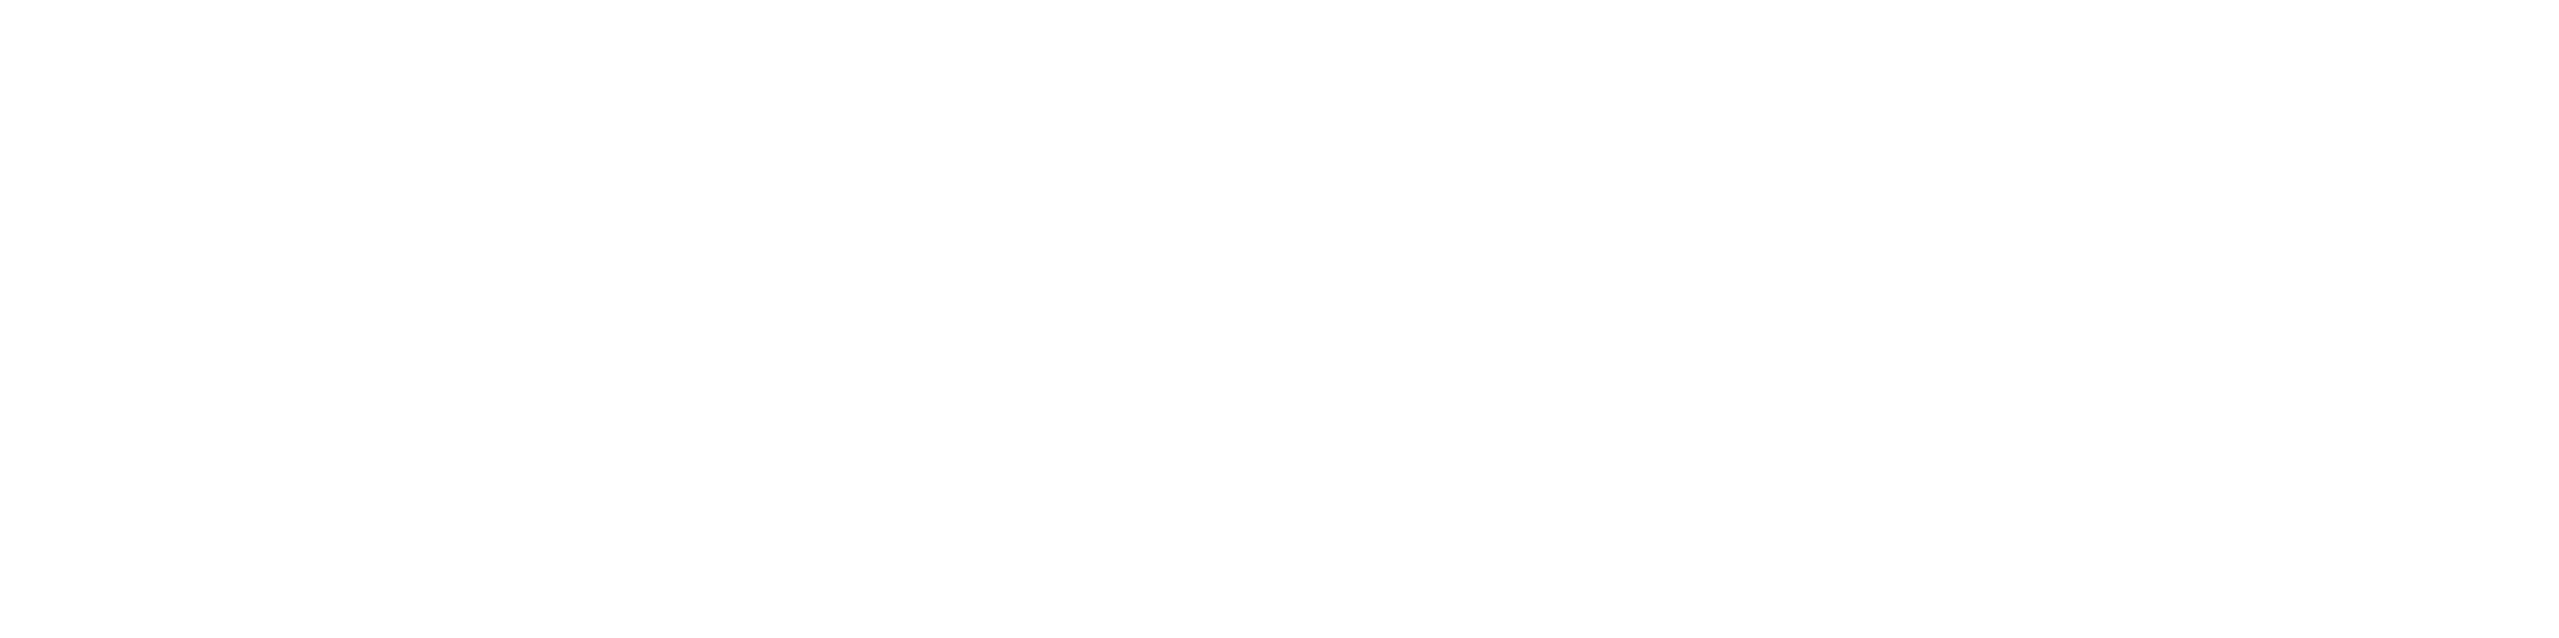 Connect Projectmanagement en Advies